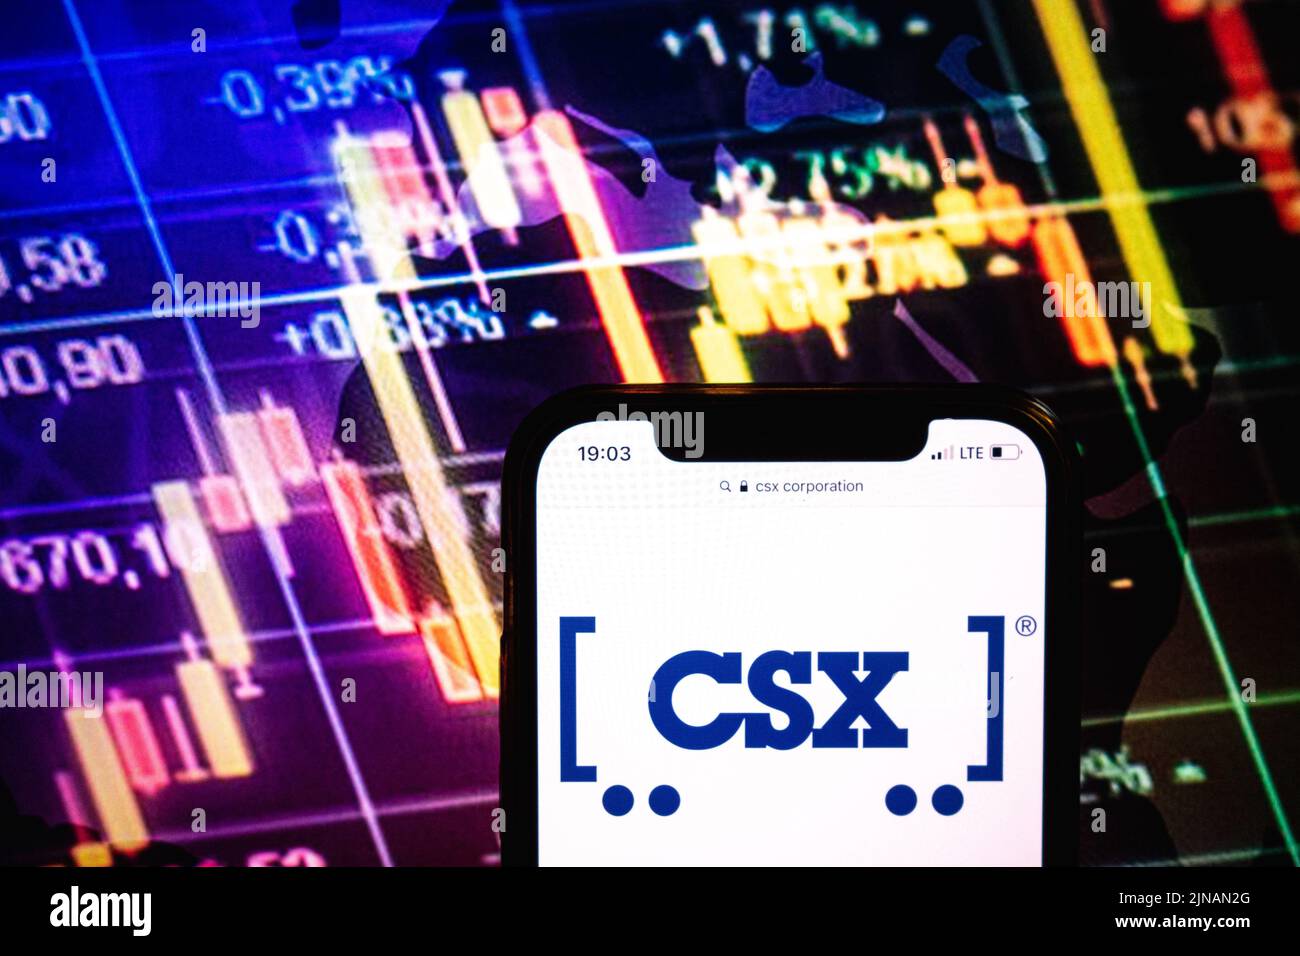 KONSKIE, POLOGNE - 09 août 2022: Smartphone affichant le logo de CSX Corporation sur fond de diagramme boursier Banque D'Images